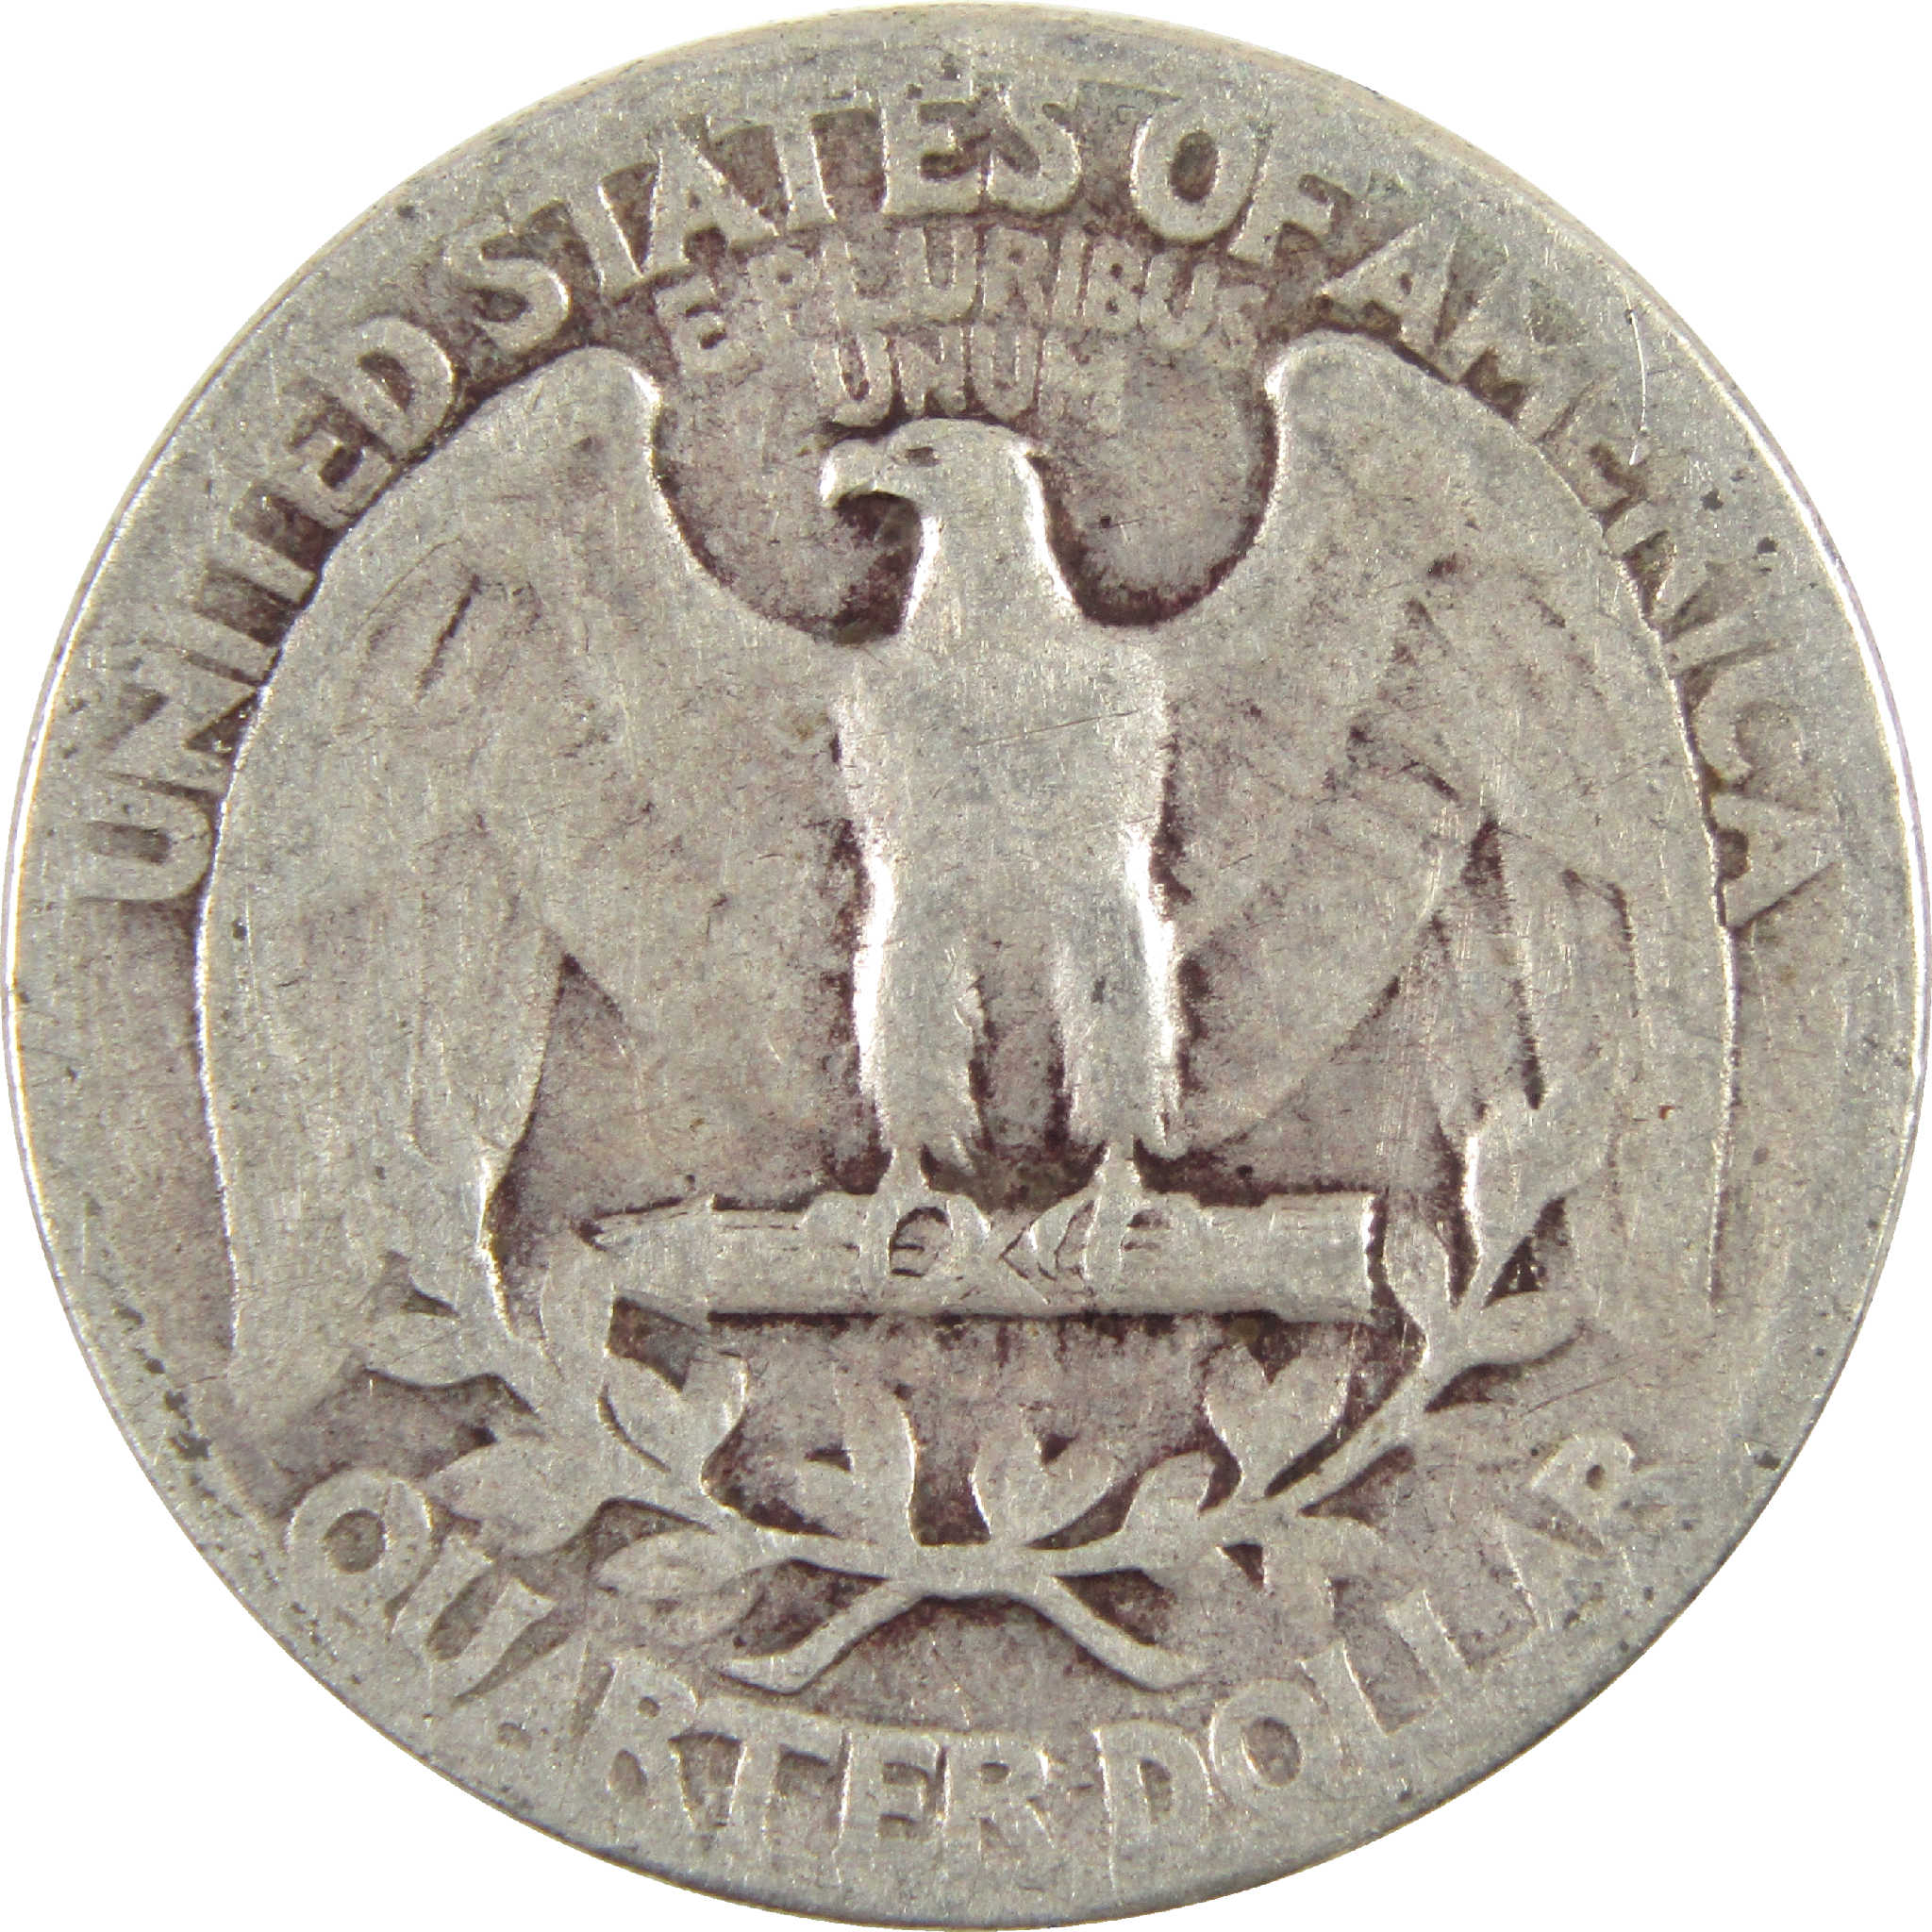 1937 Washington Quarter G Good Silver 25c Coin